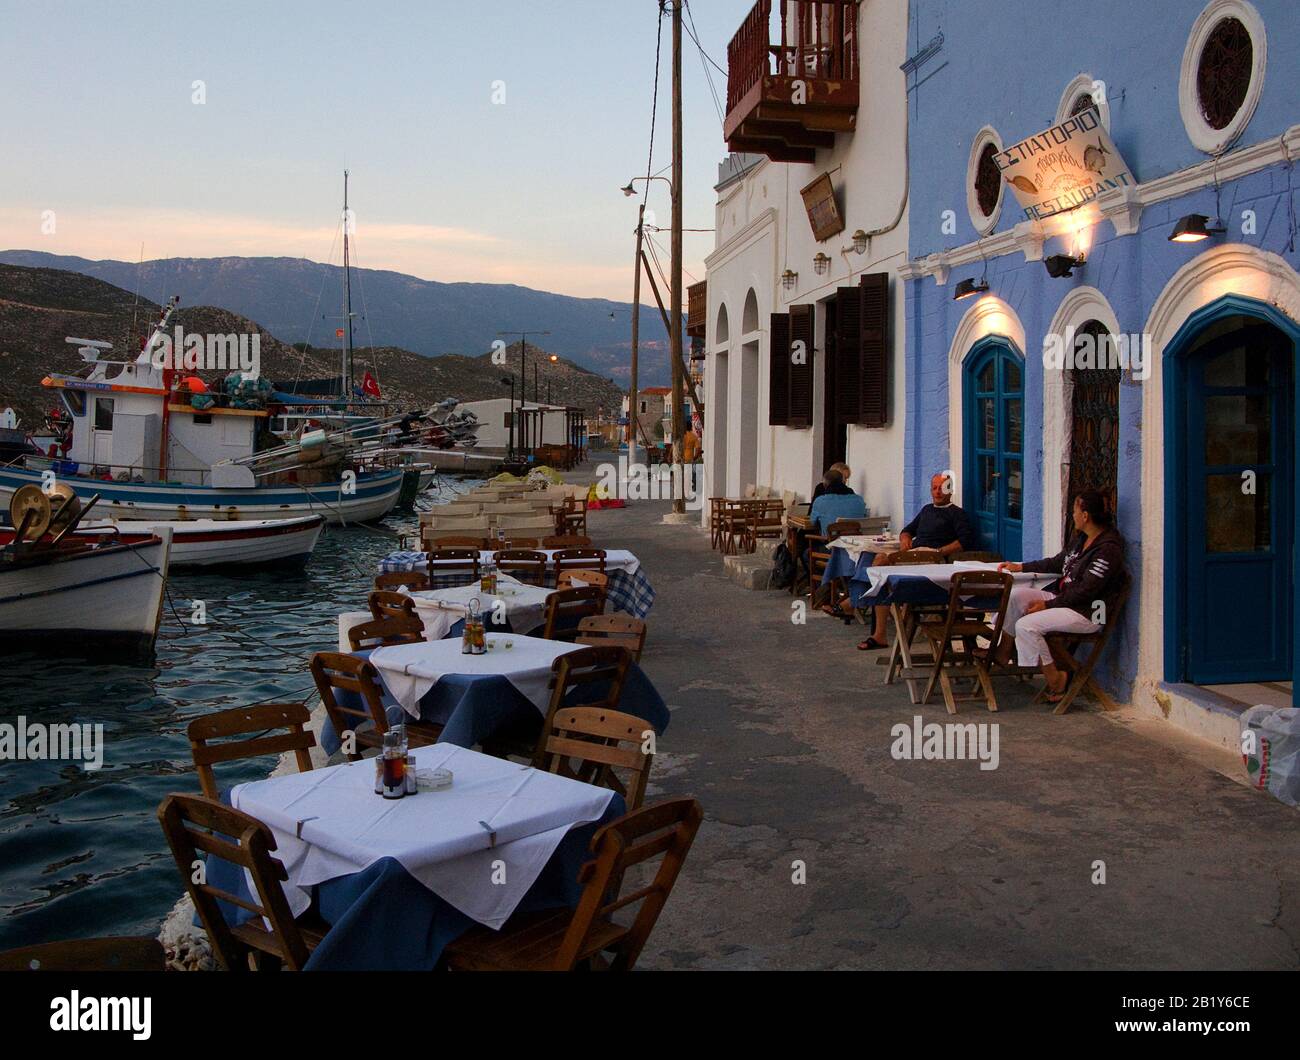 Ambiance nocturne sur l'île Meis, également connue sous le nom de Kastellorizo, restaurant du port sur l'île Meis, Grèce Banque D'Images